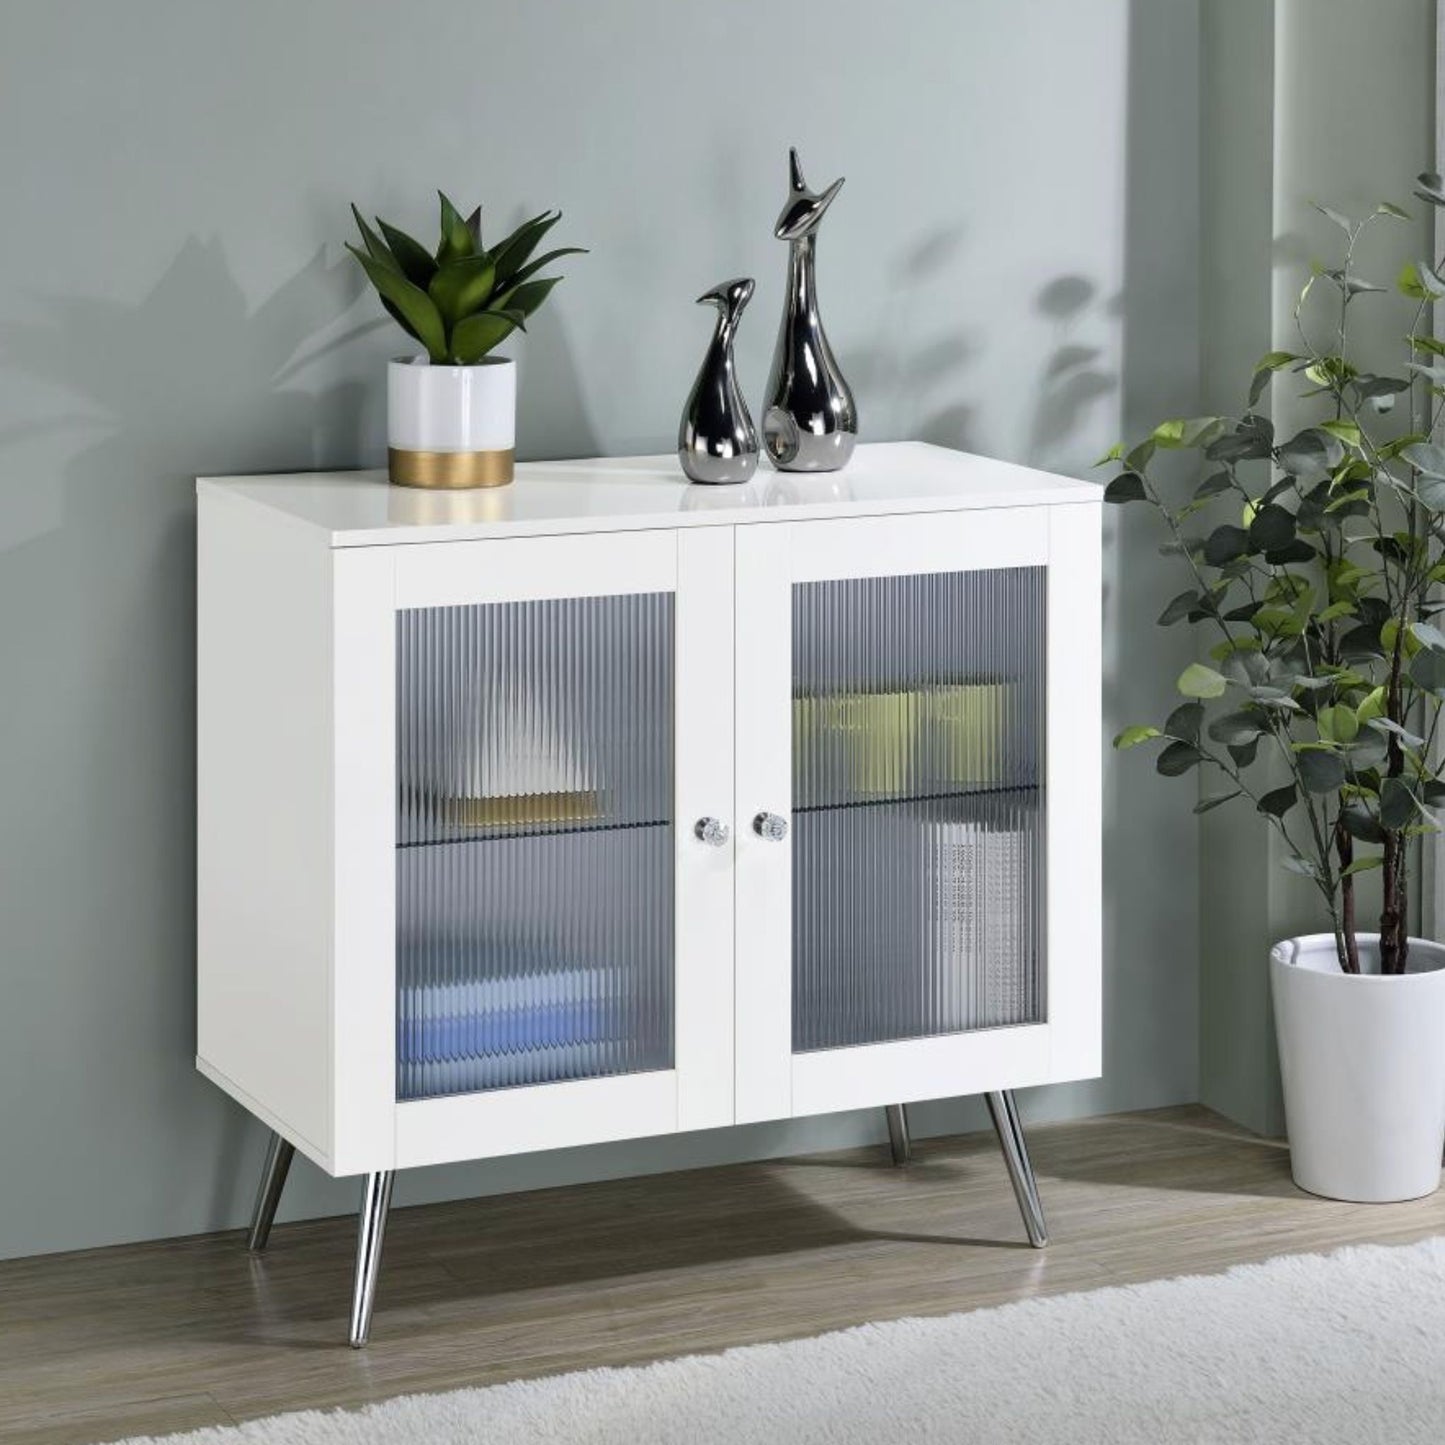 NIETA 2-tier Accent Cabinet with Glass Shelf